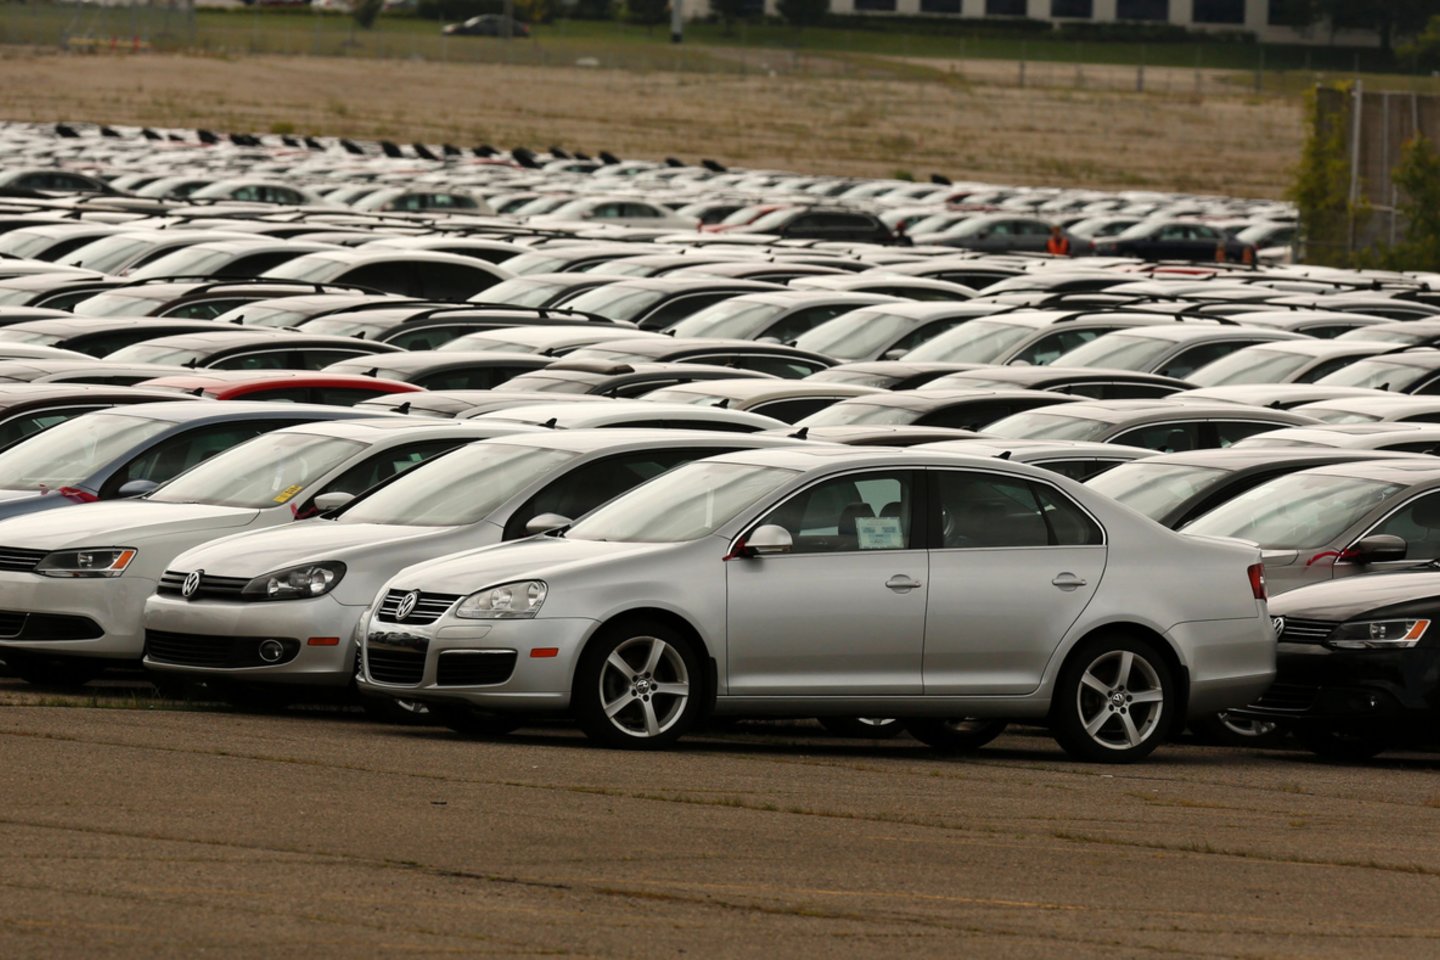  JAV rinkoje „Volkswagen AG“ iš savininkų išpirko daugiau nei 300 tūkst. automobilių.<br> AFP/Scanpix nuotr.